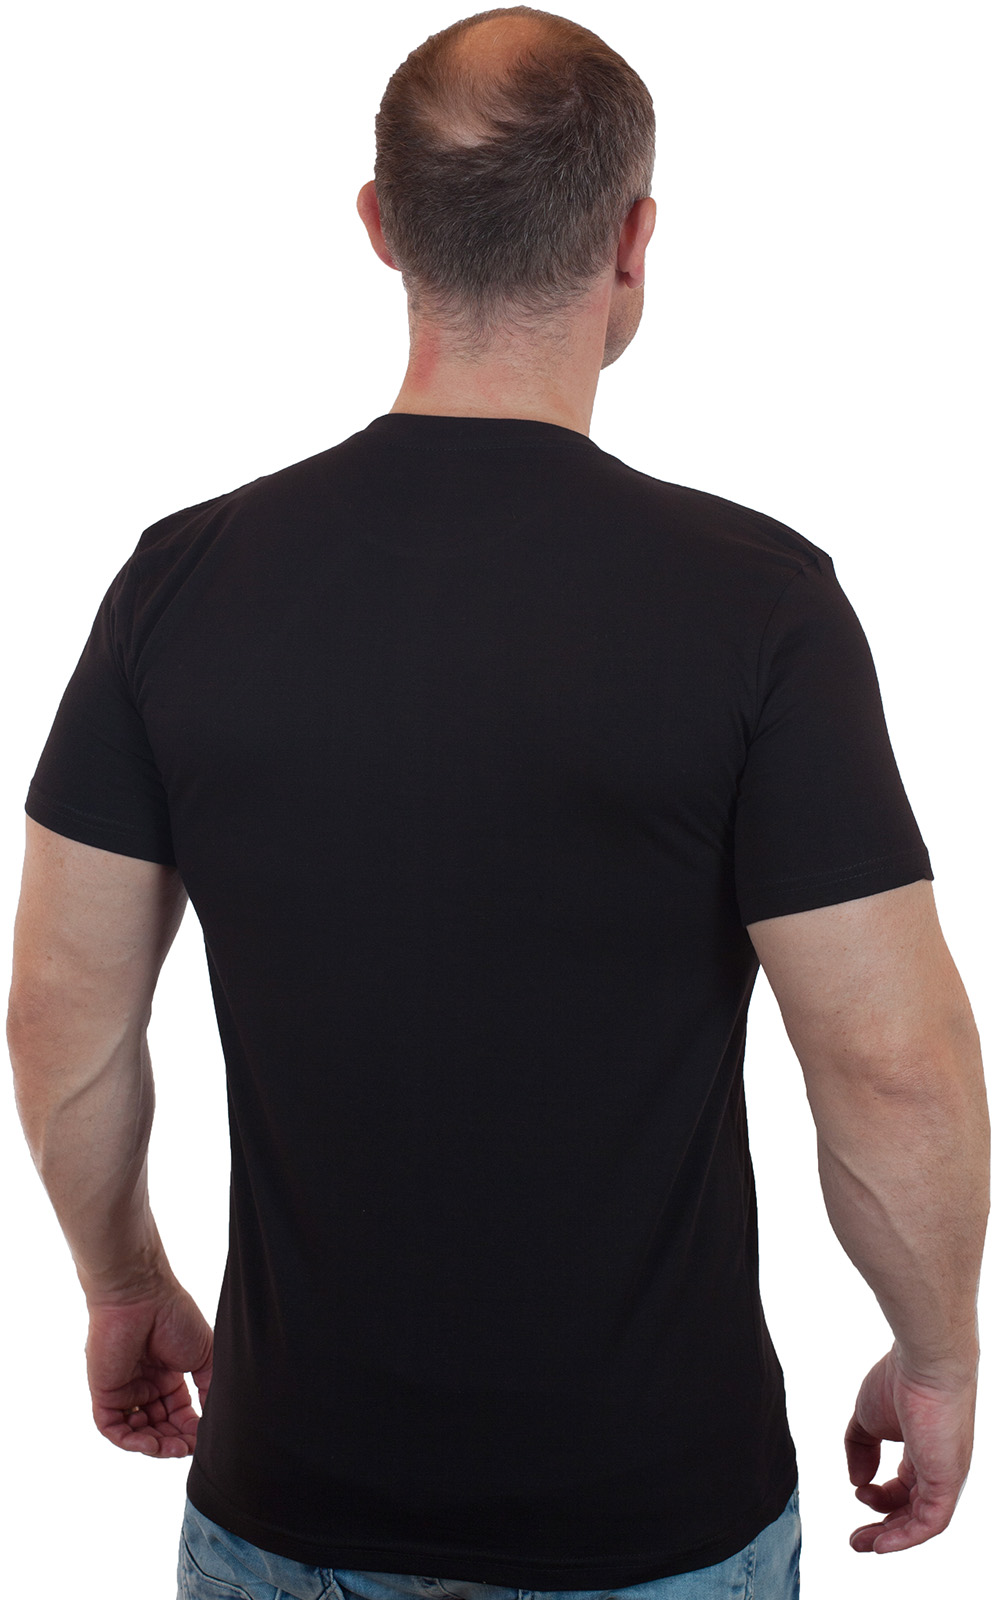 Чёрная футболка с овальной эмблемой разведки ВДВ 